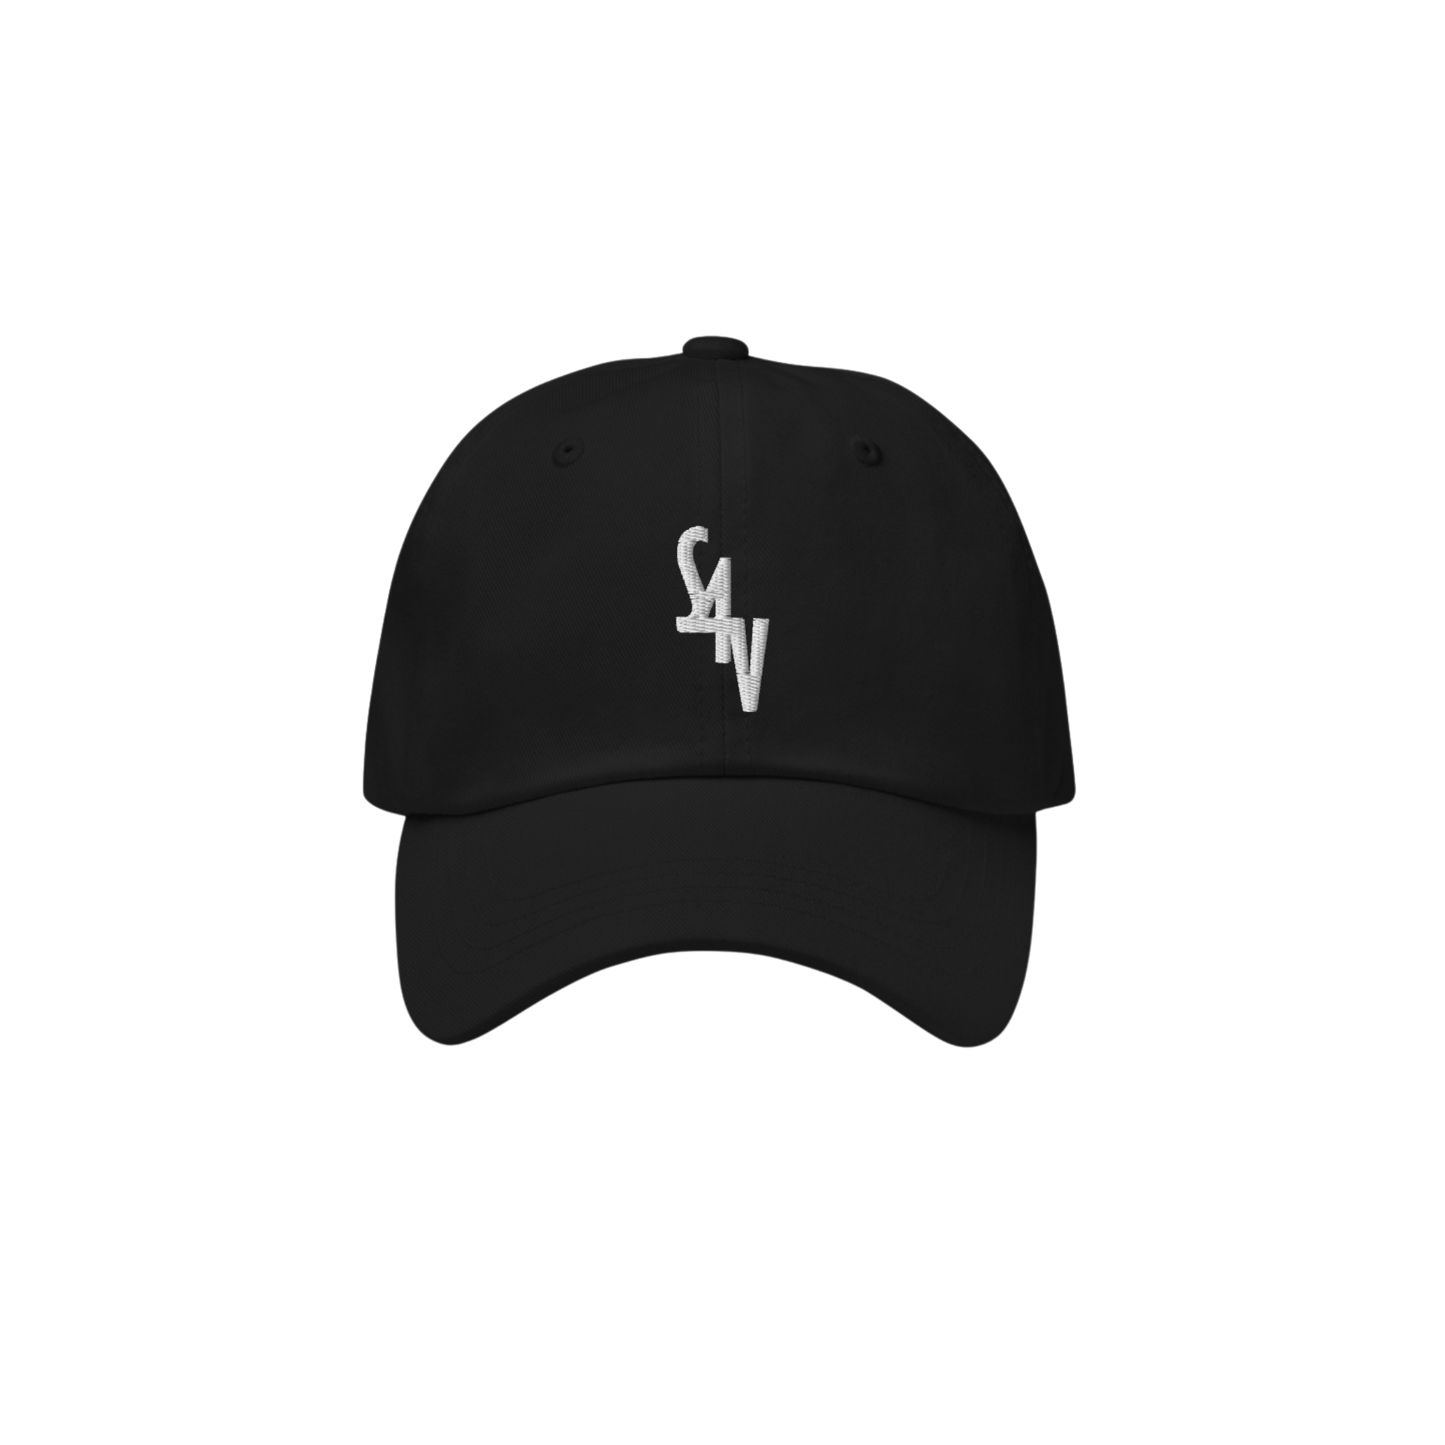 S4V CLASSIC DAD CAP